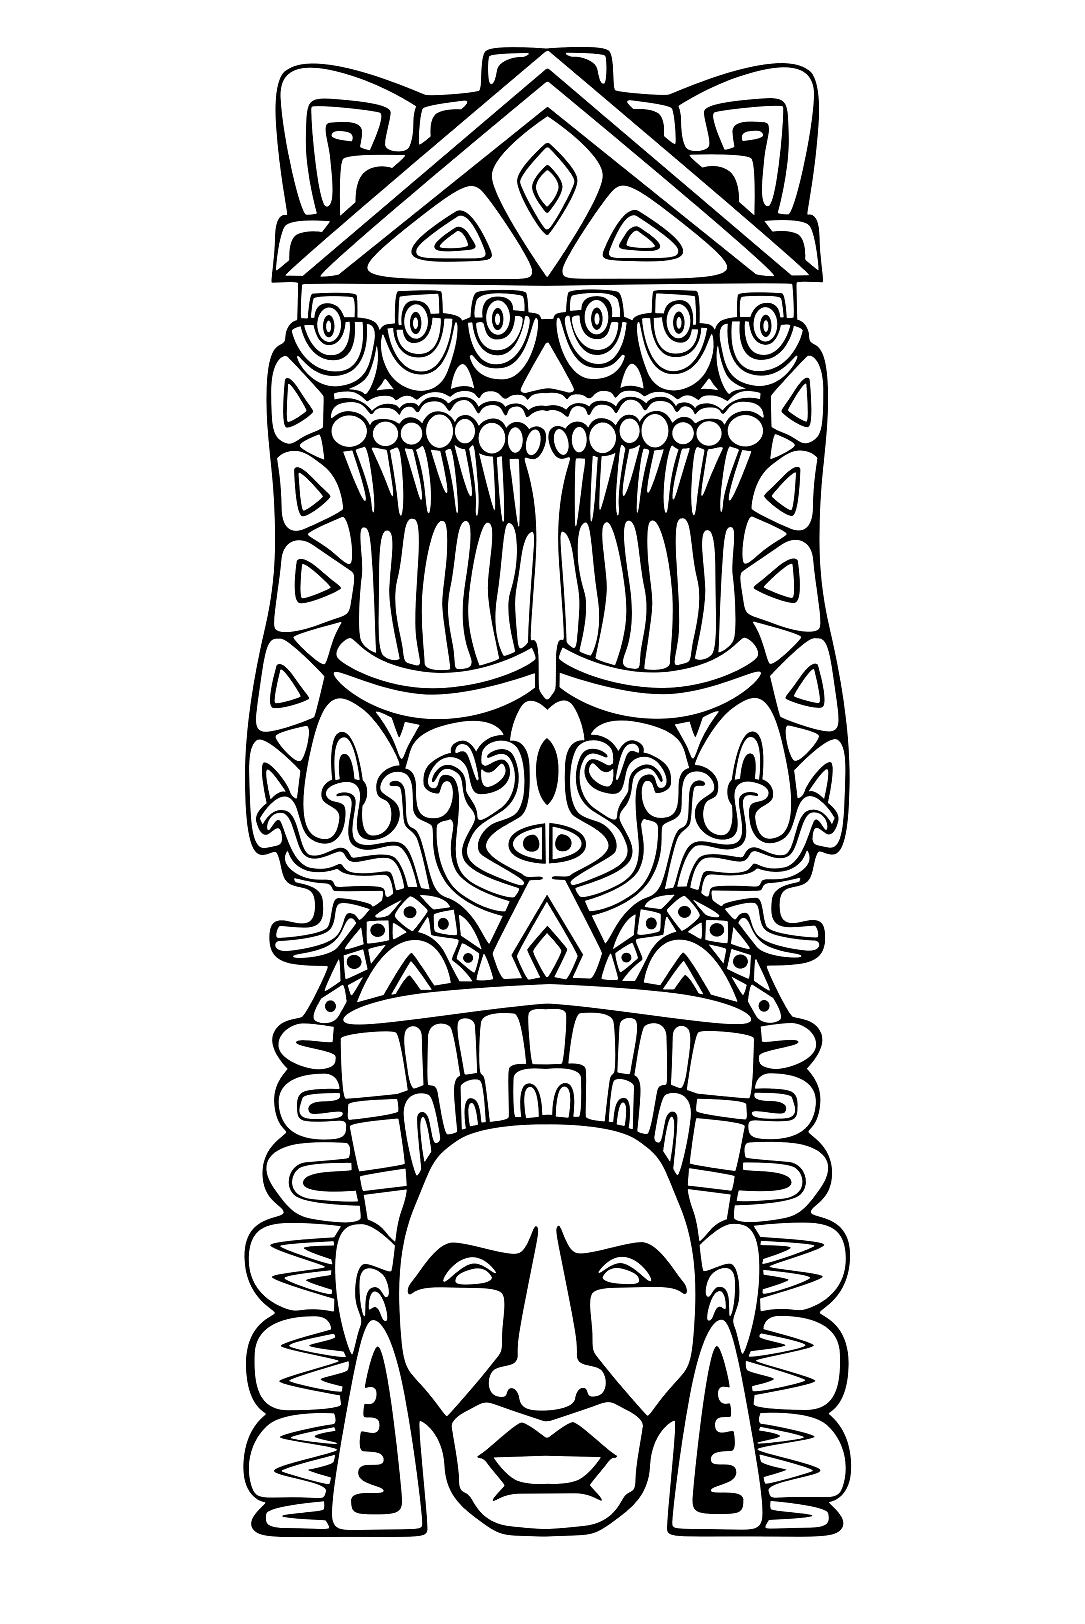 Disegni da colorare per adulti : Maya, Aztechi e Incas - 6, Artista : Rocich   Fonte : 123rf